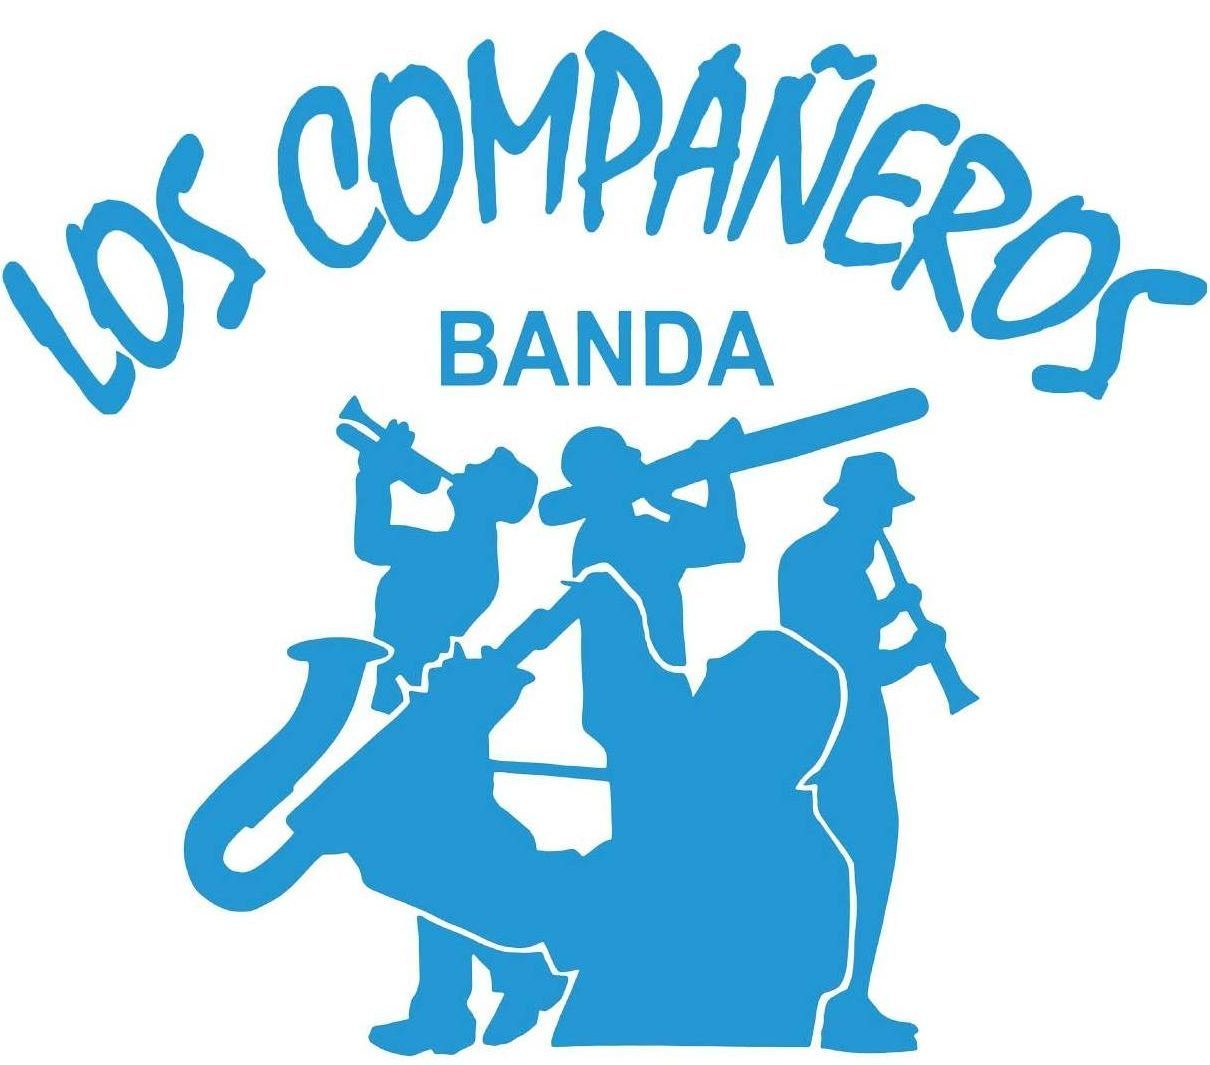 BANDA LOS COMPAÑEROS (09)